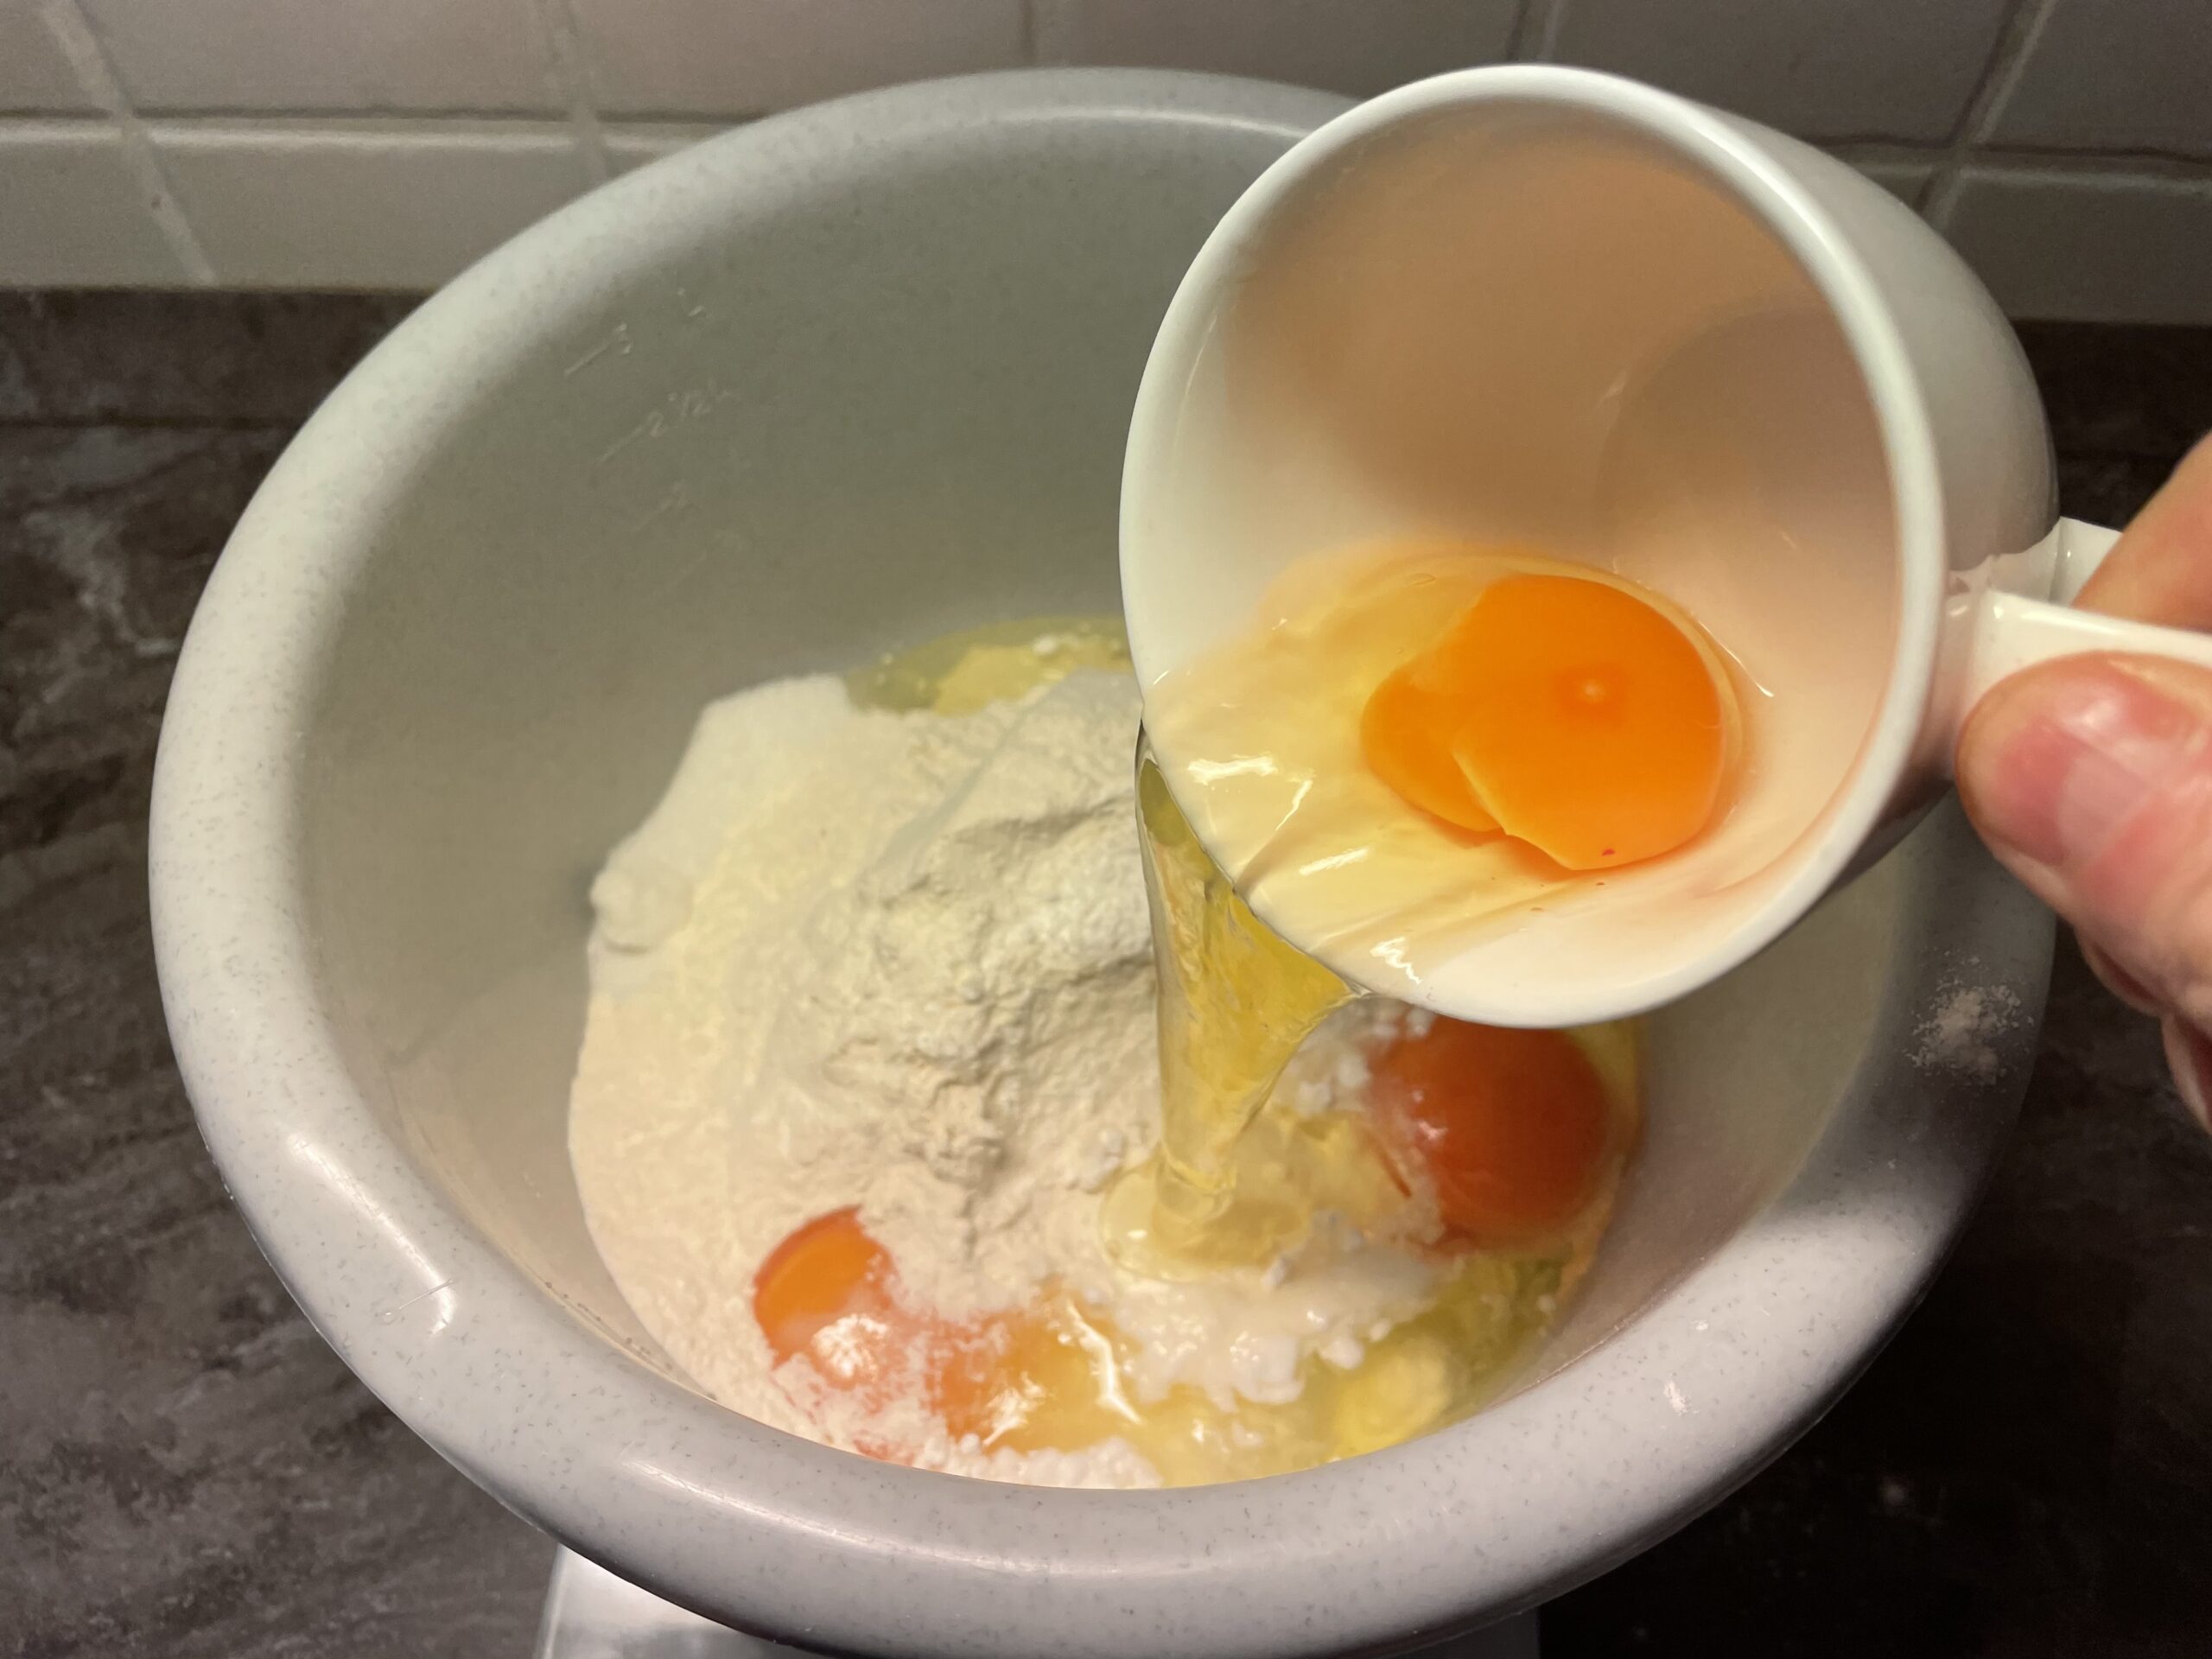 Bild zum Schritt 11 für das Bastel- und DIY-Abenteuer für Kinder: 'Schlagt jedes Ei einzeln in die Tasse auf und gebt...'